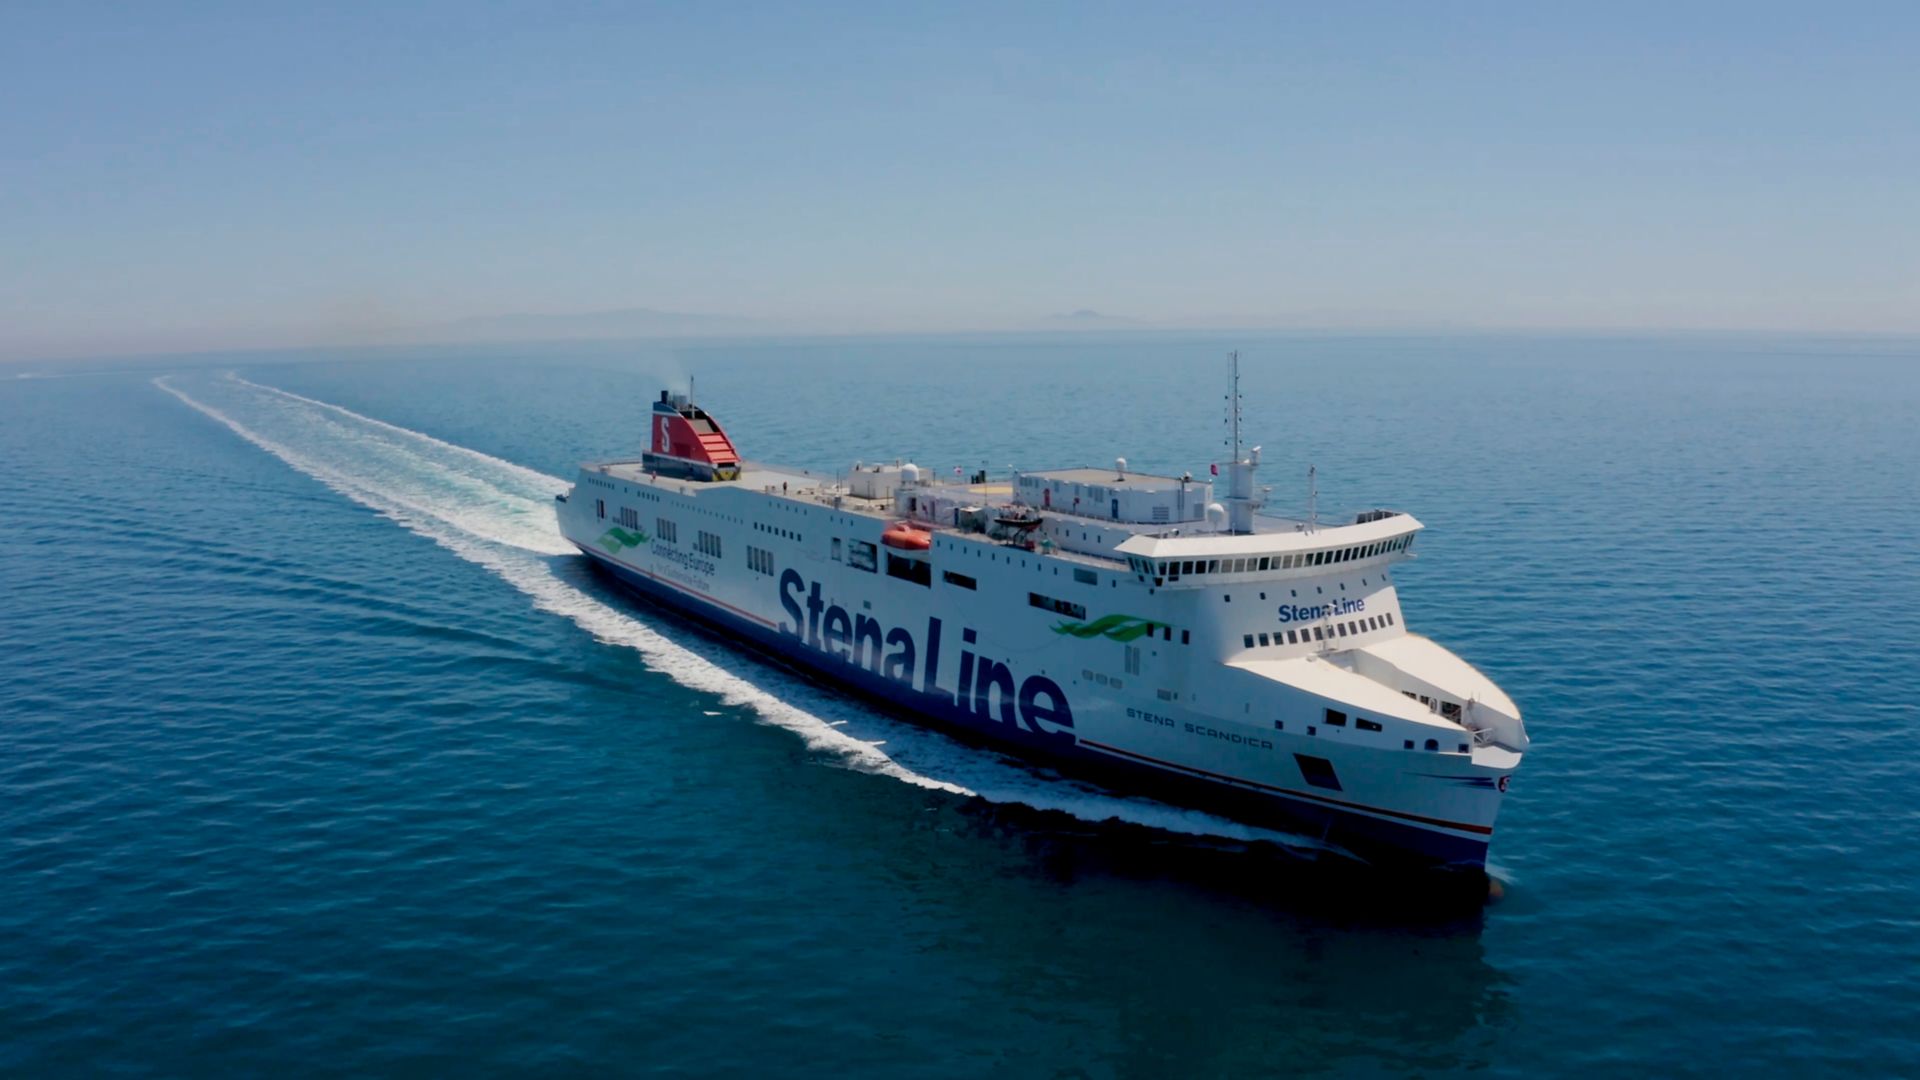 Stena Scandica ferry at sea